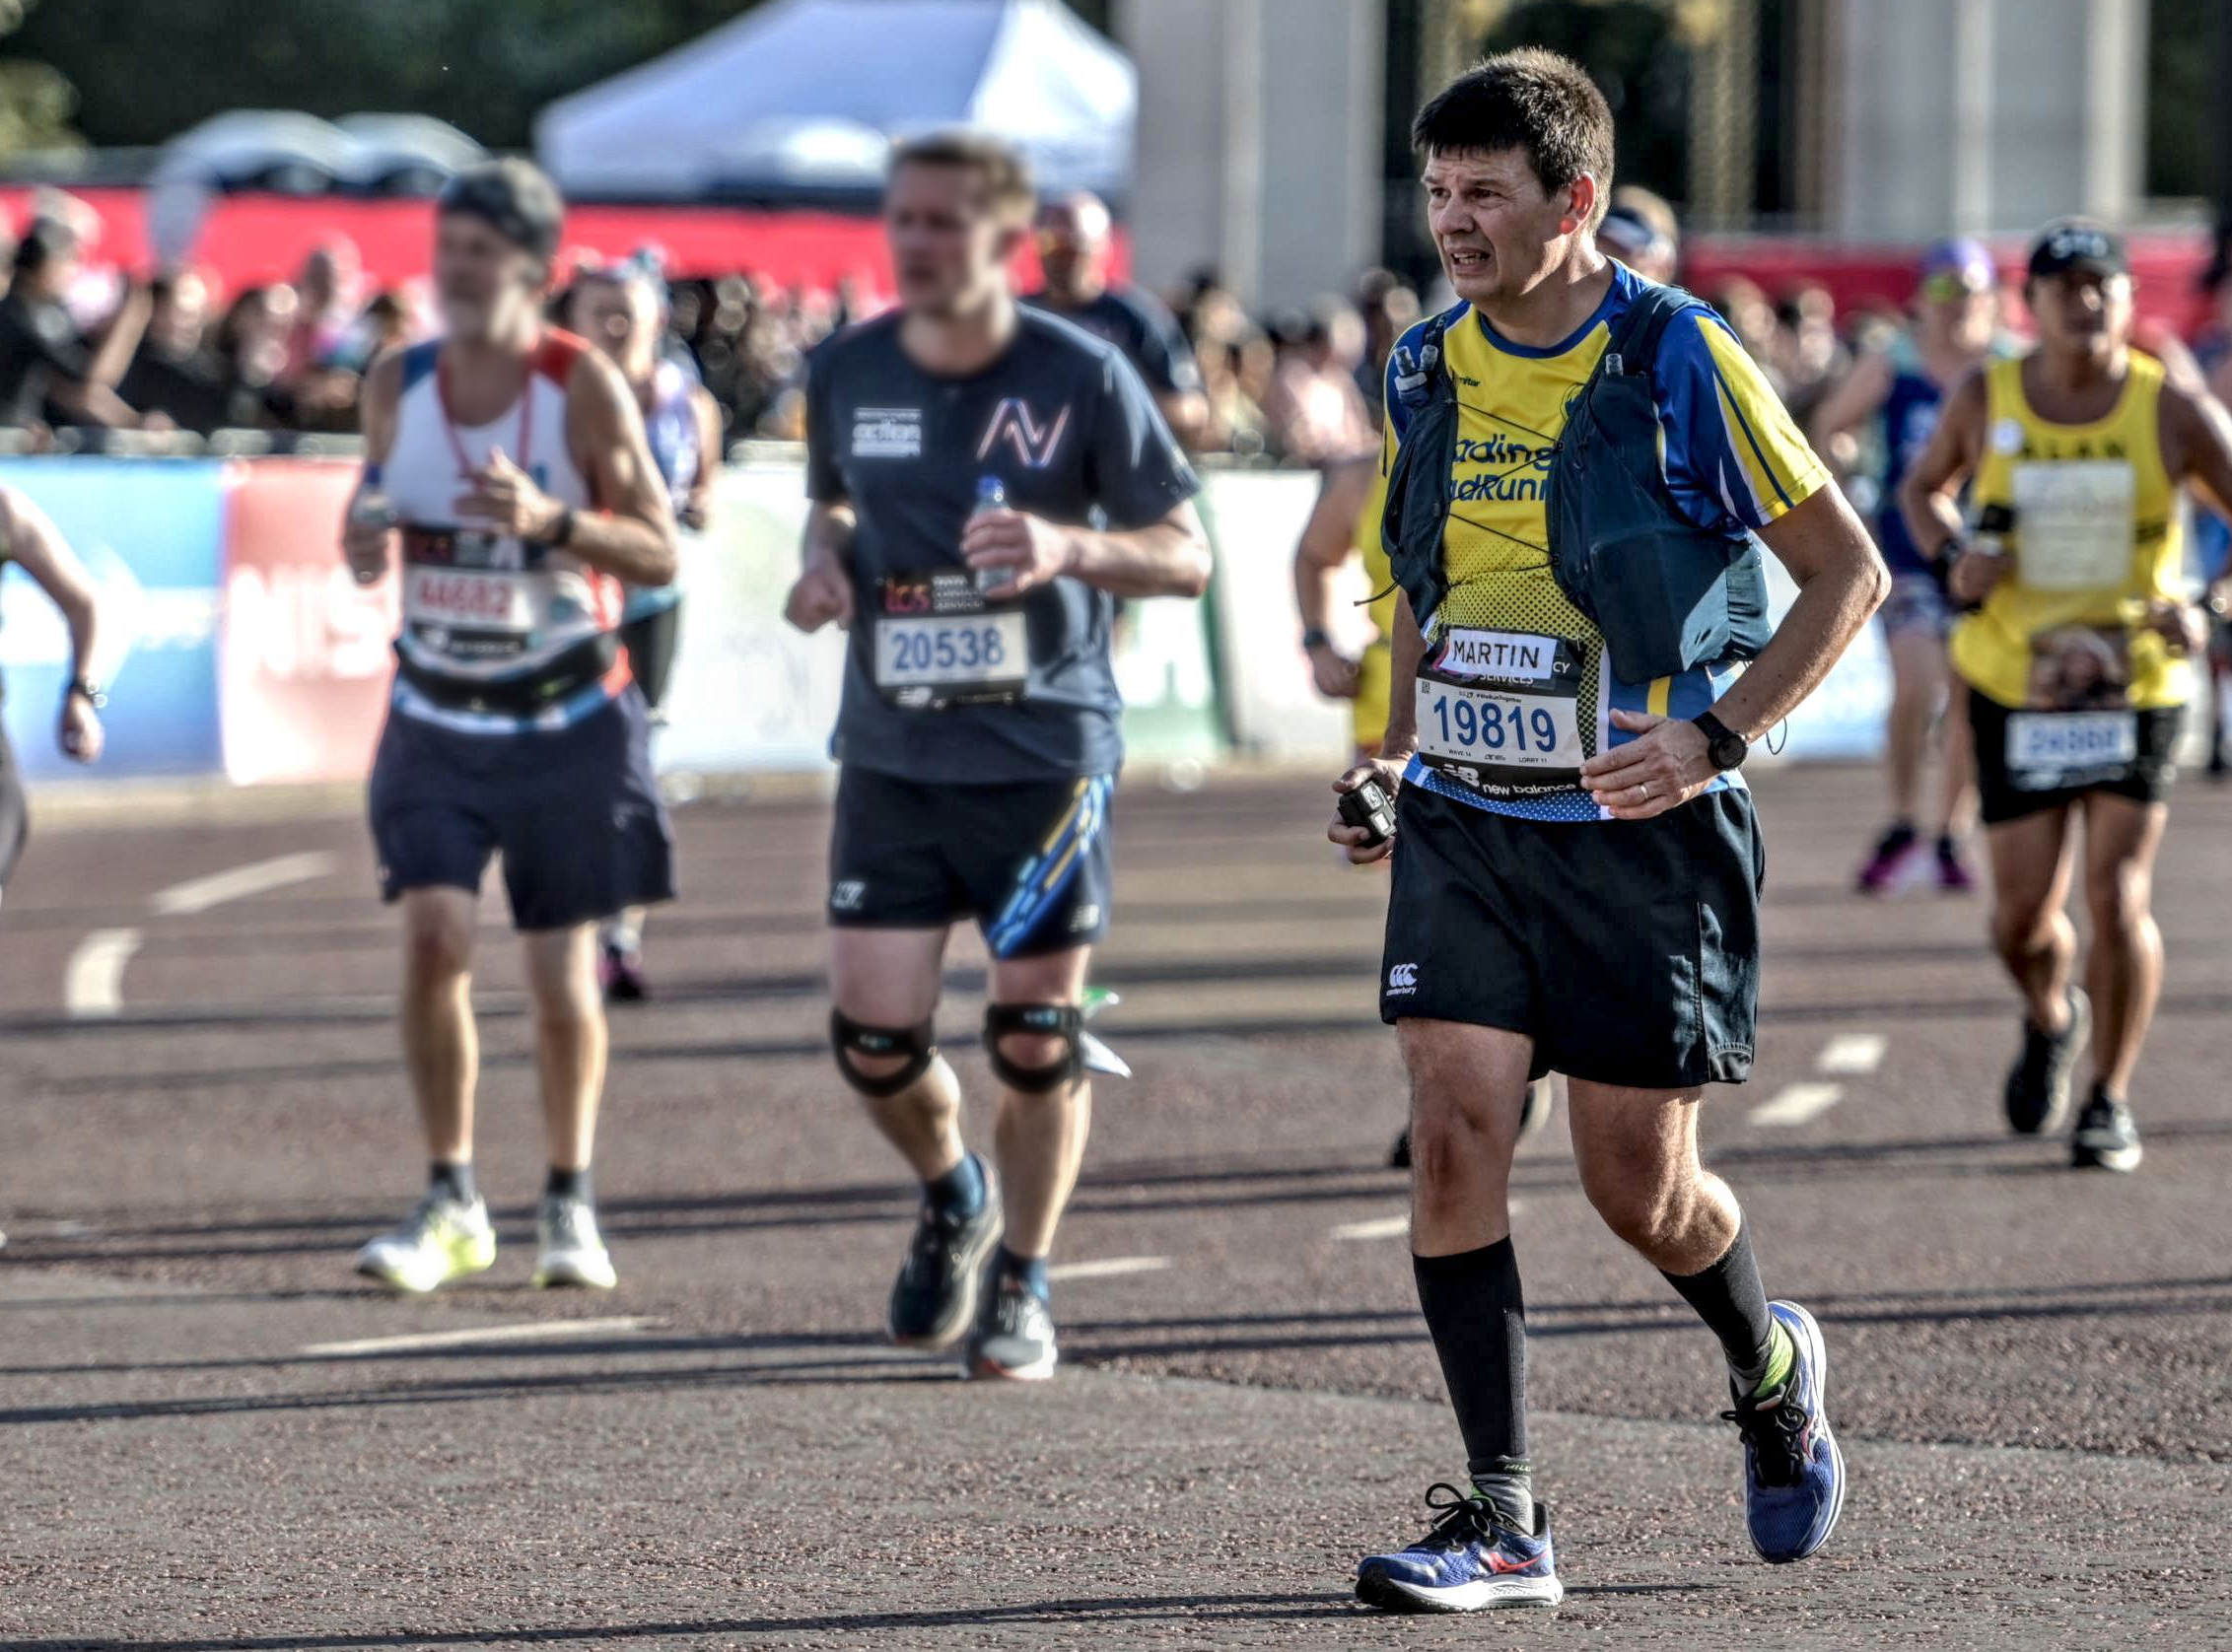 Martin L. running in a marathon. 